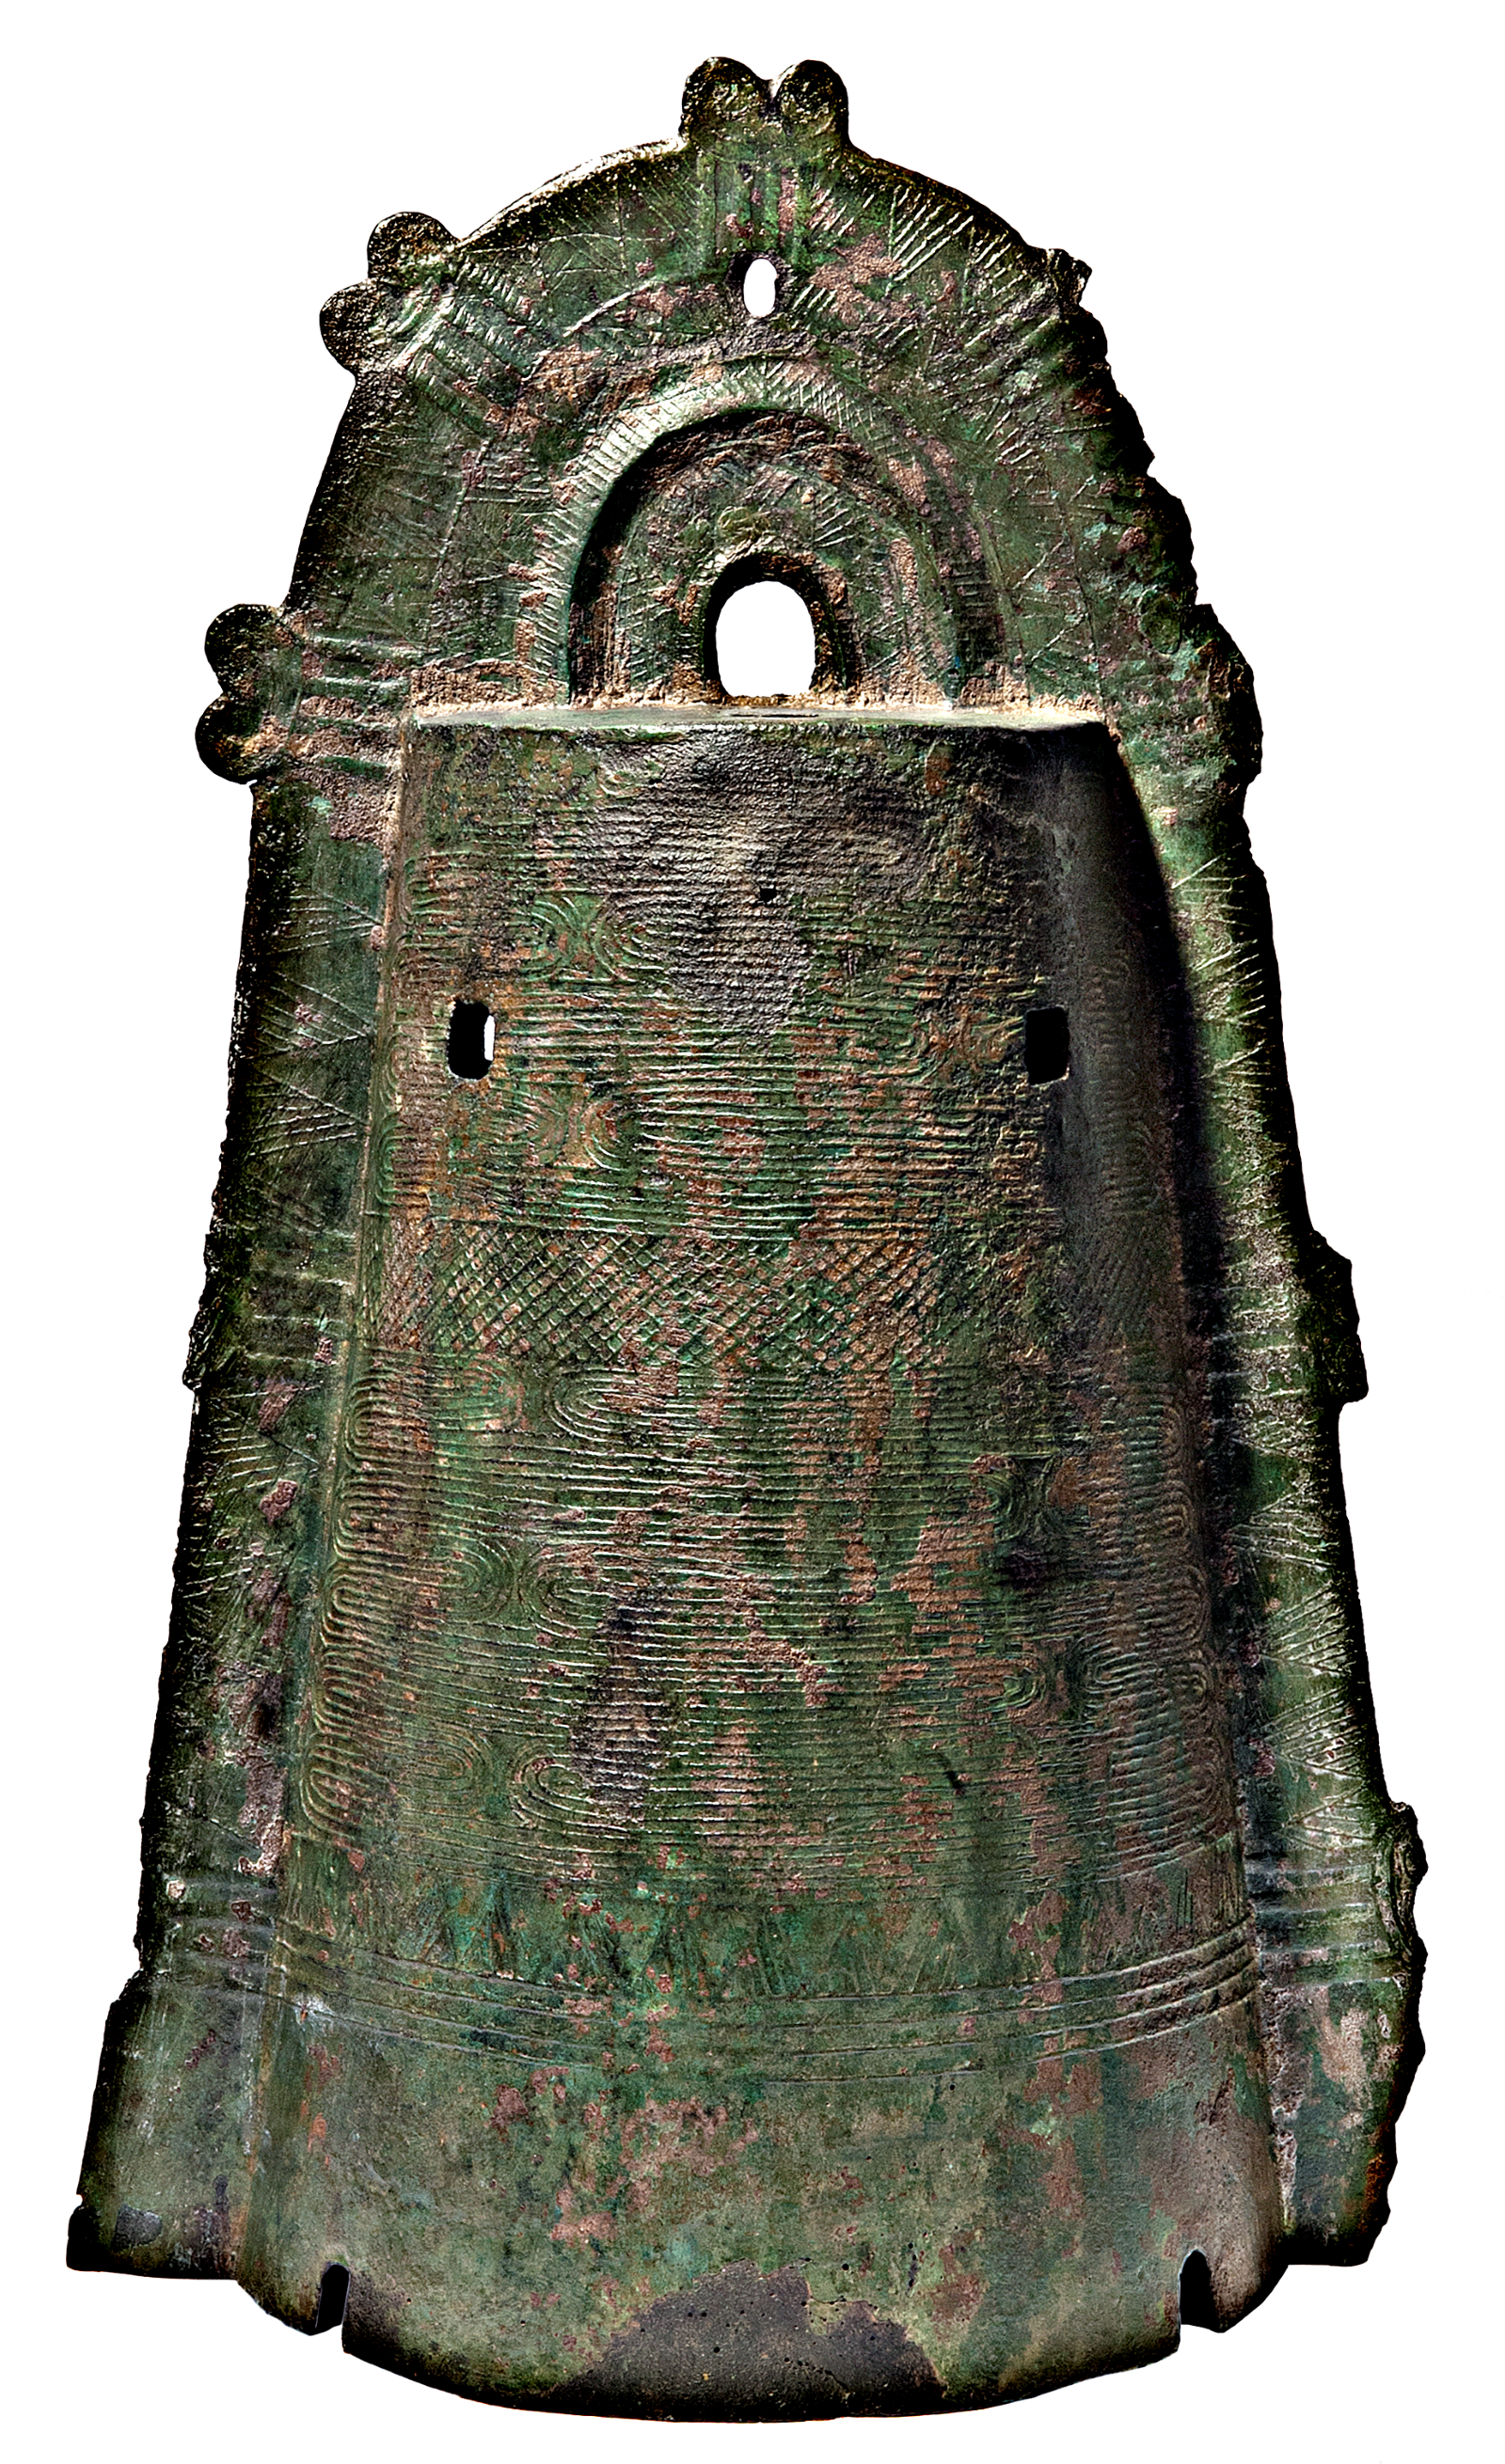 Ritual bell (dōtaku)